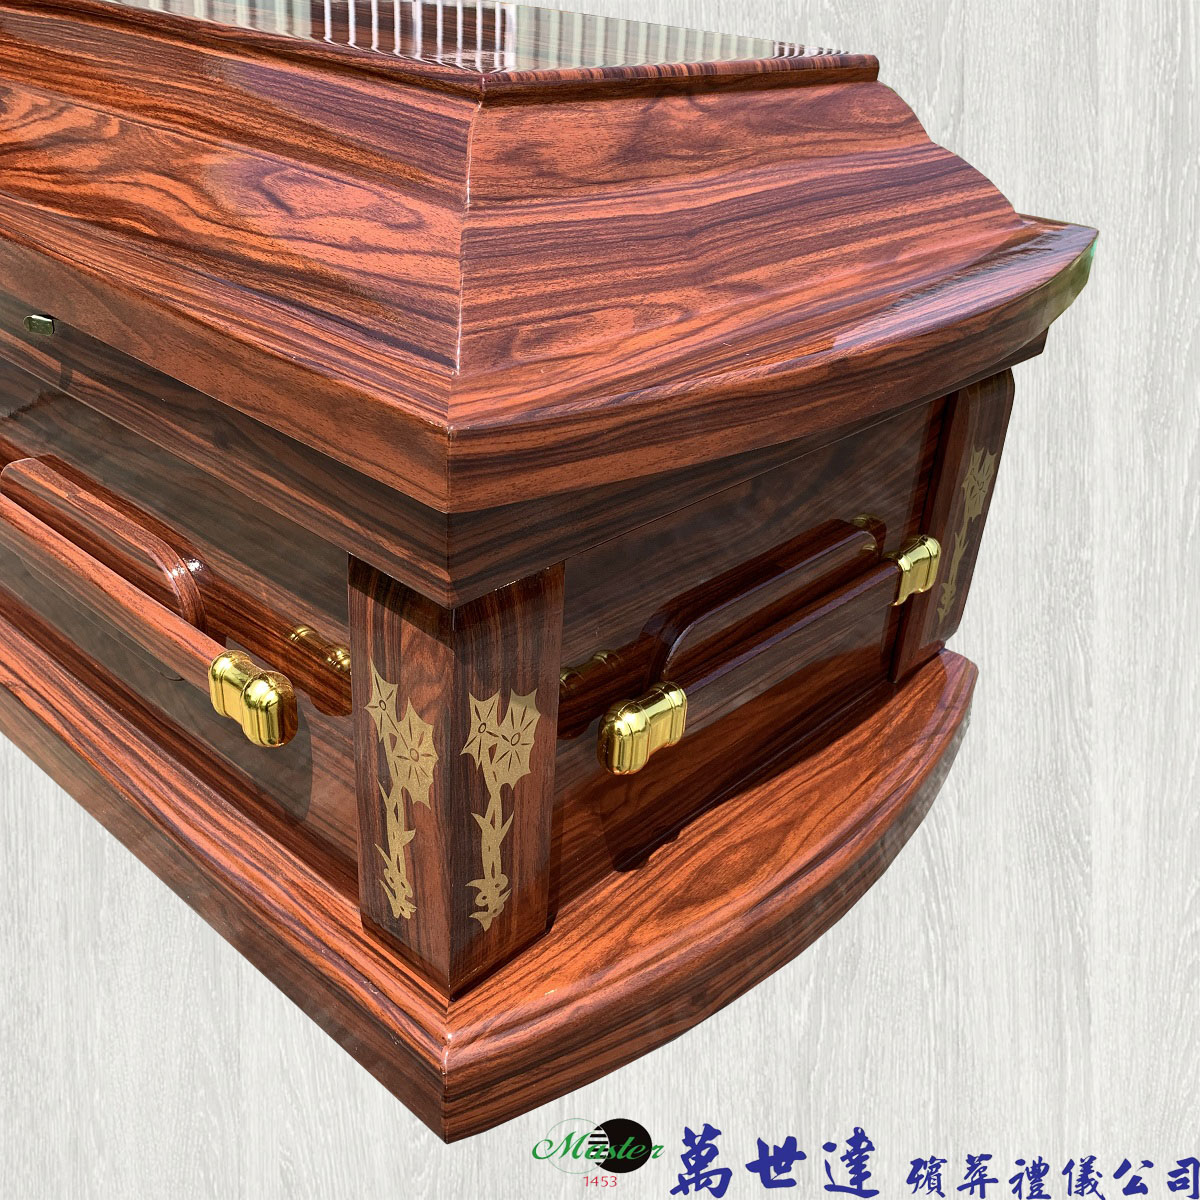 【打桶】火化平蓋椏杉木扶手棺2.1尺